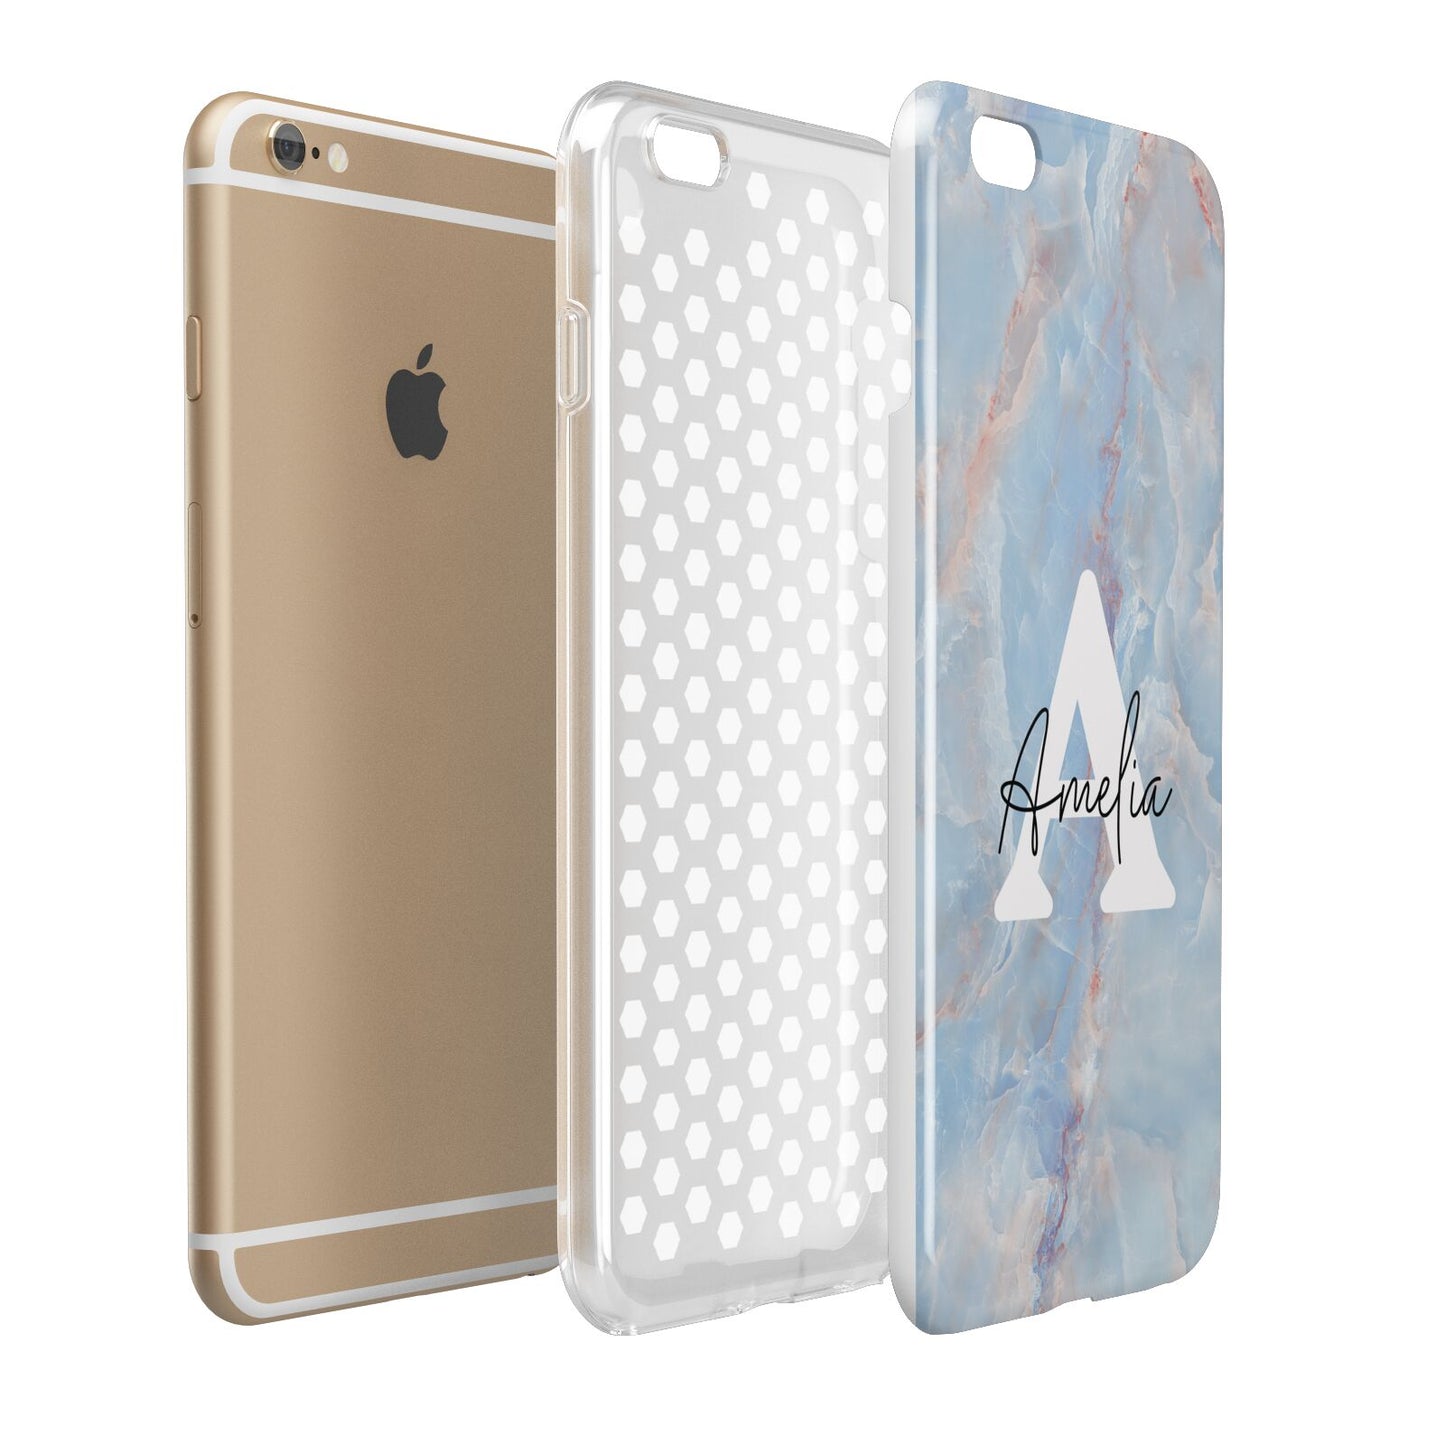 Blue Onyx Marble Apple iPhone 6 Plus 3D Tough Case Expand Detail Image